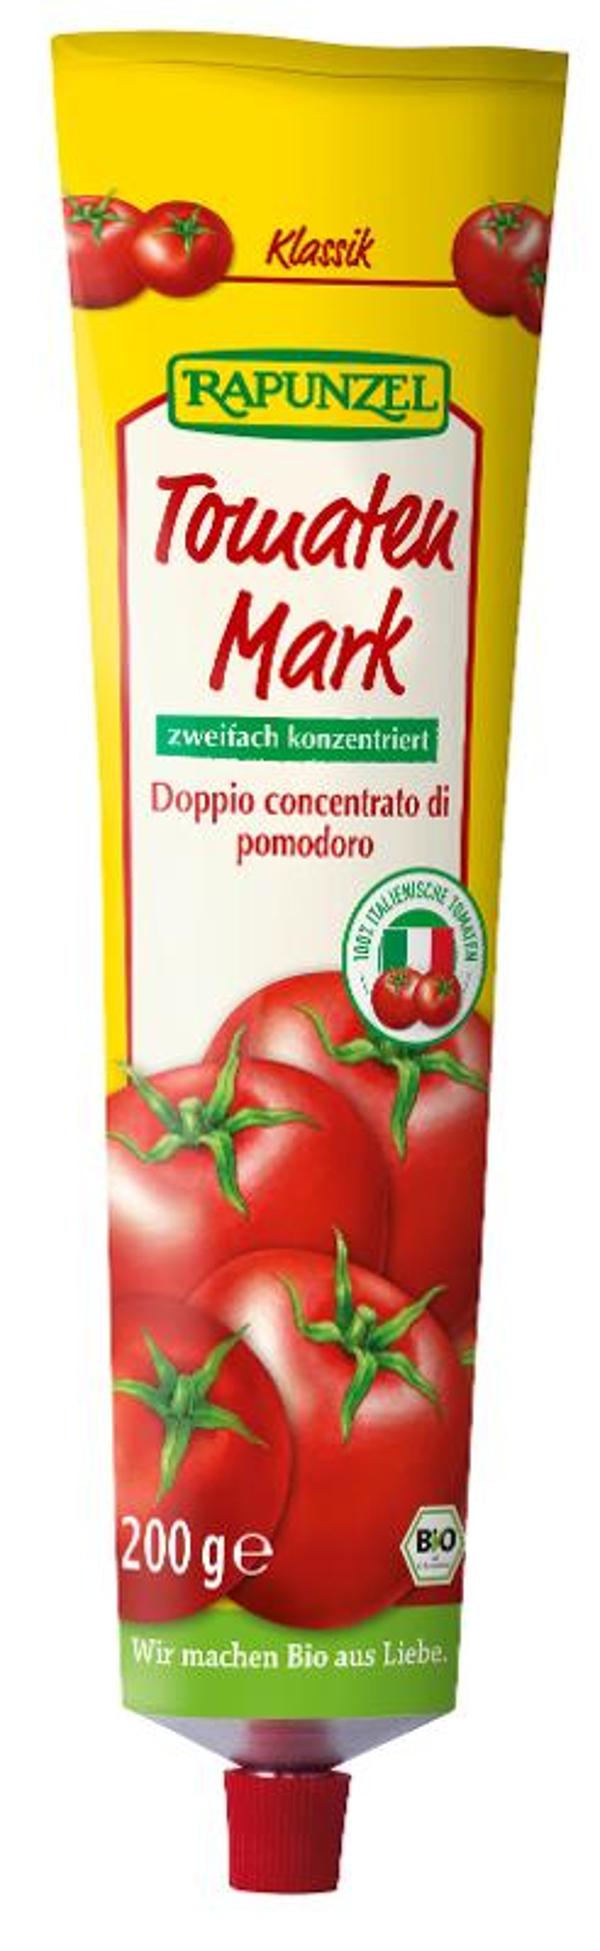 Produktfoto zu Tomatenmark in der Tube